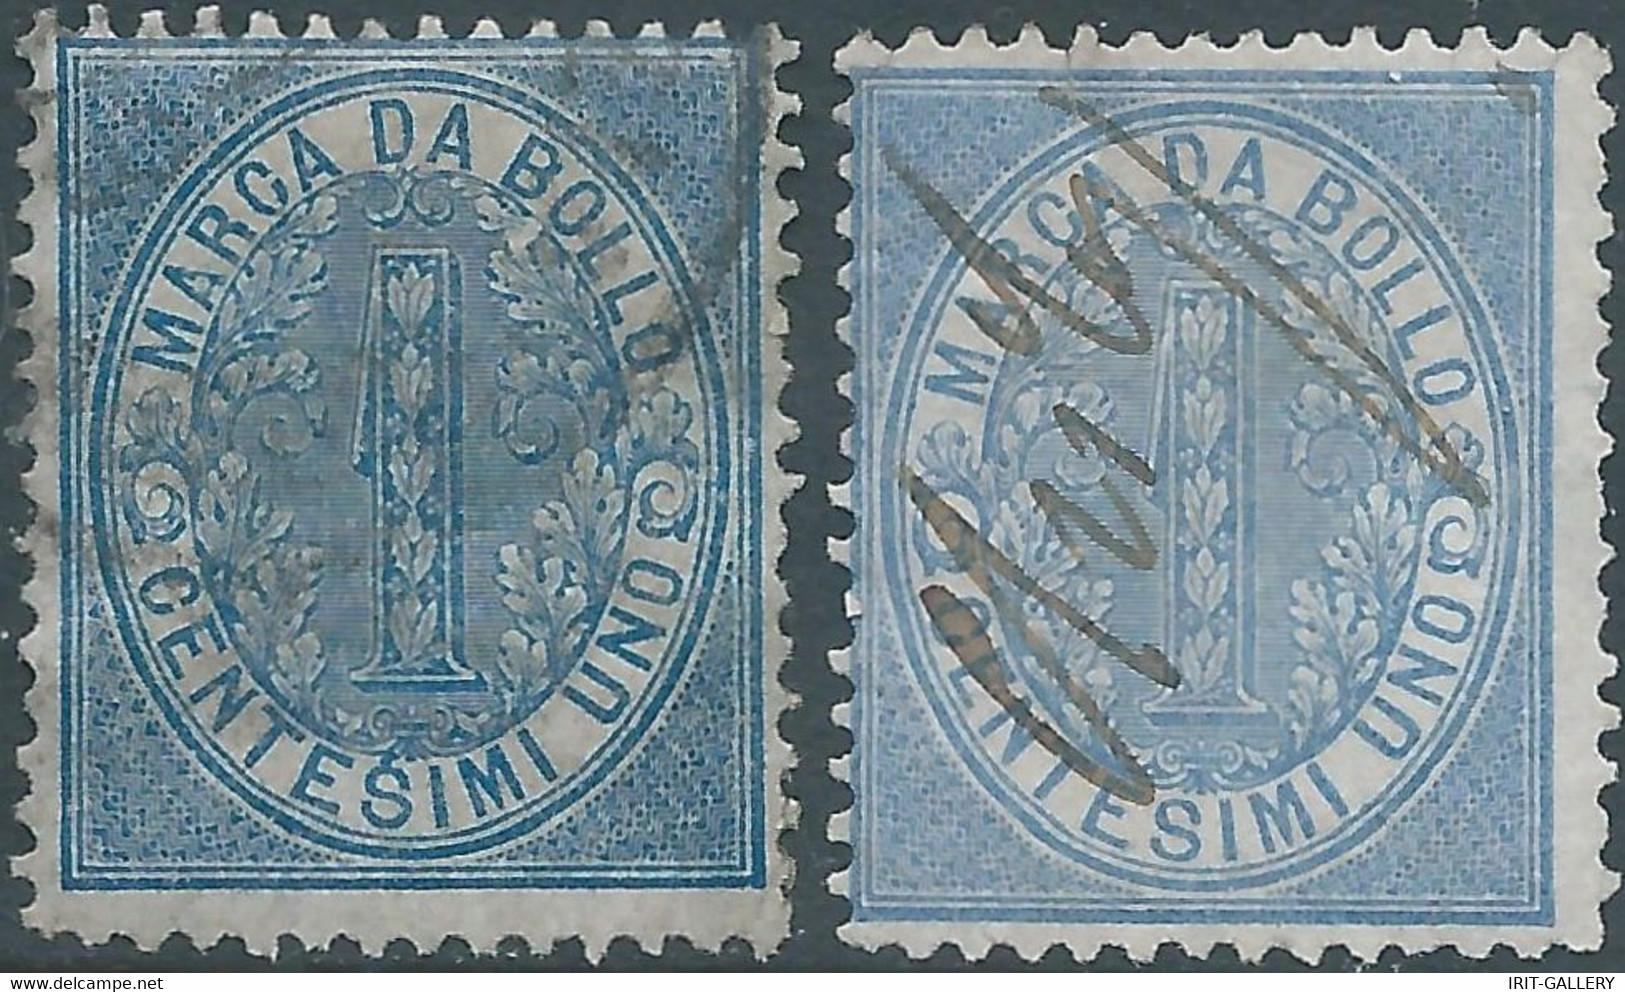 ITALIA-ITALY-ITALIEN,1868 Marca Da Bollo,Revenue Fiscal -Tax 2X 1Cent,Used - Fiscale Zegels